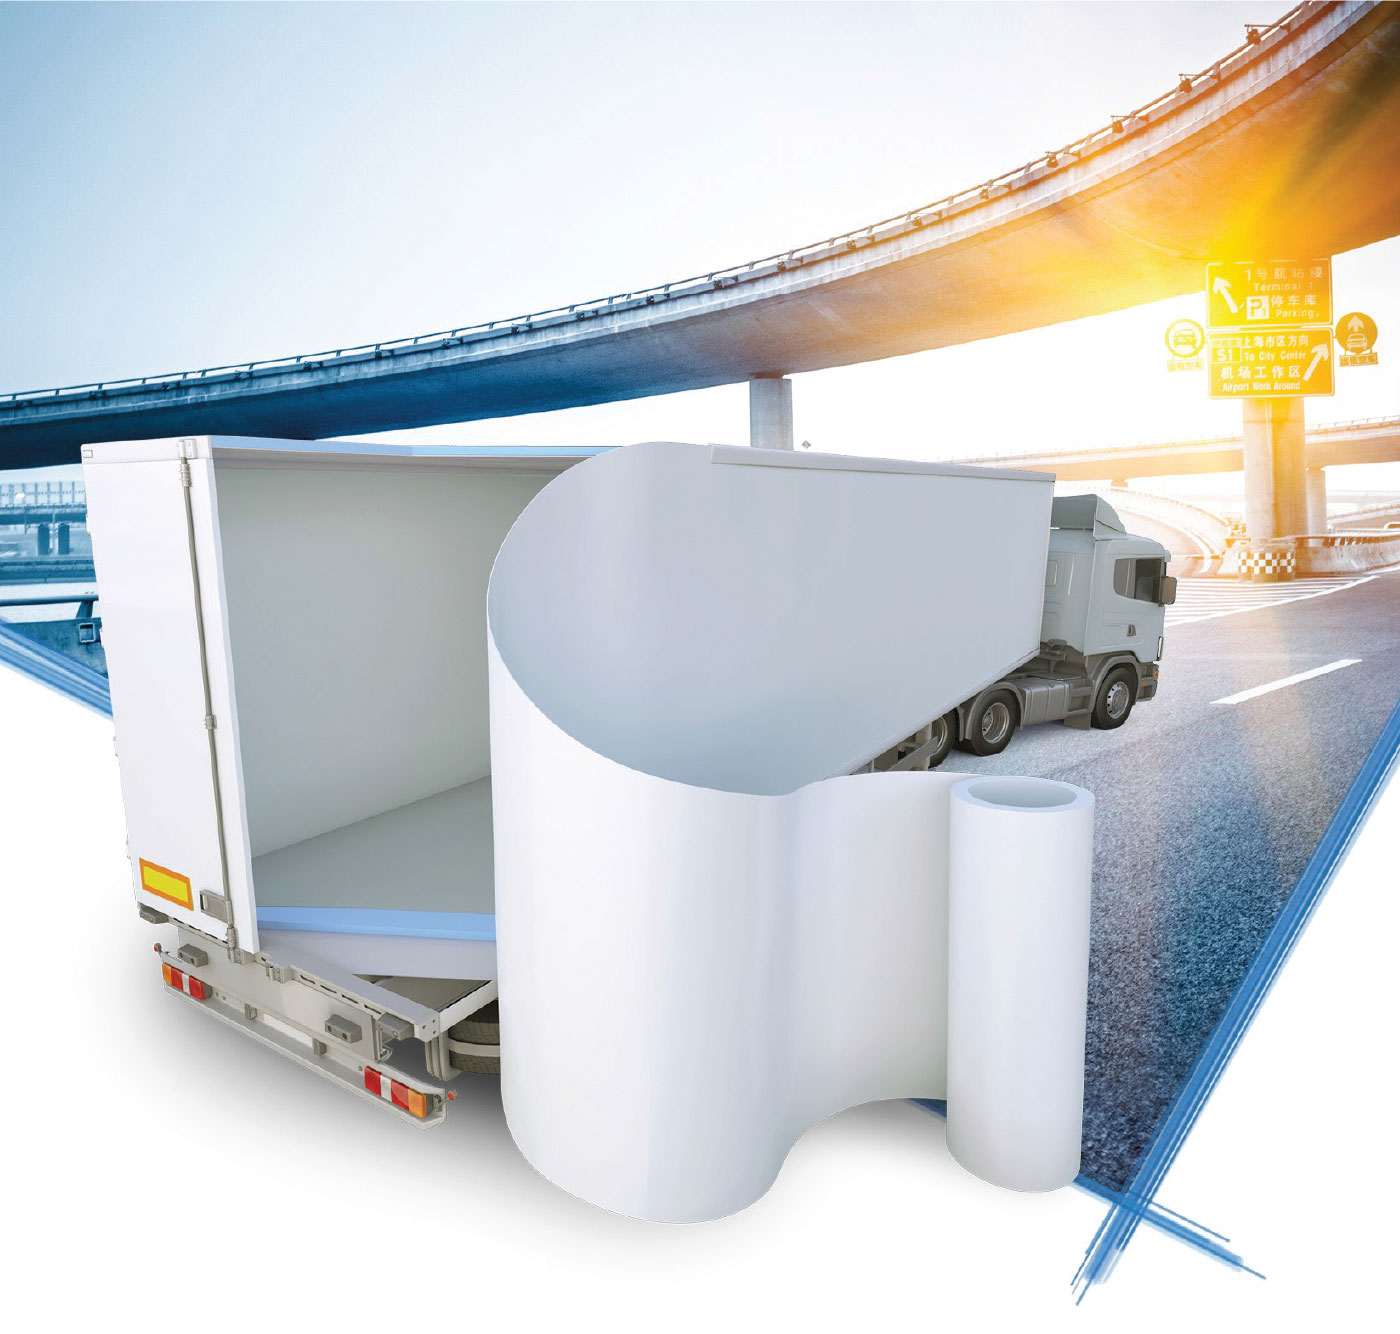 Brianza Plastica Truck insulation products range